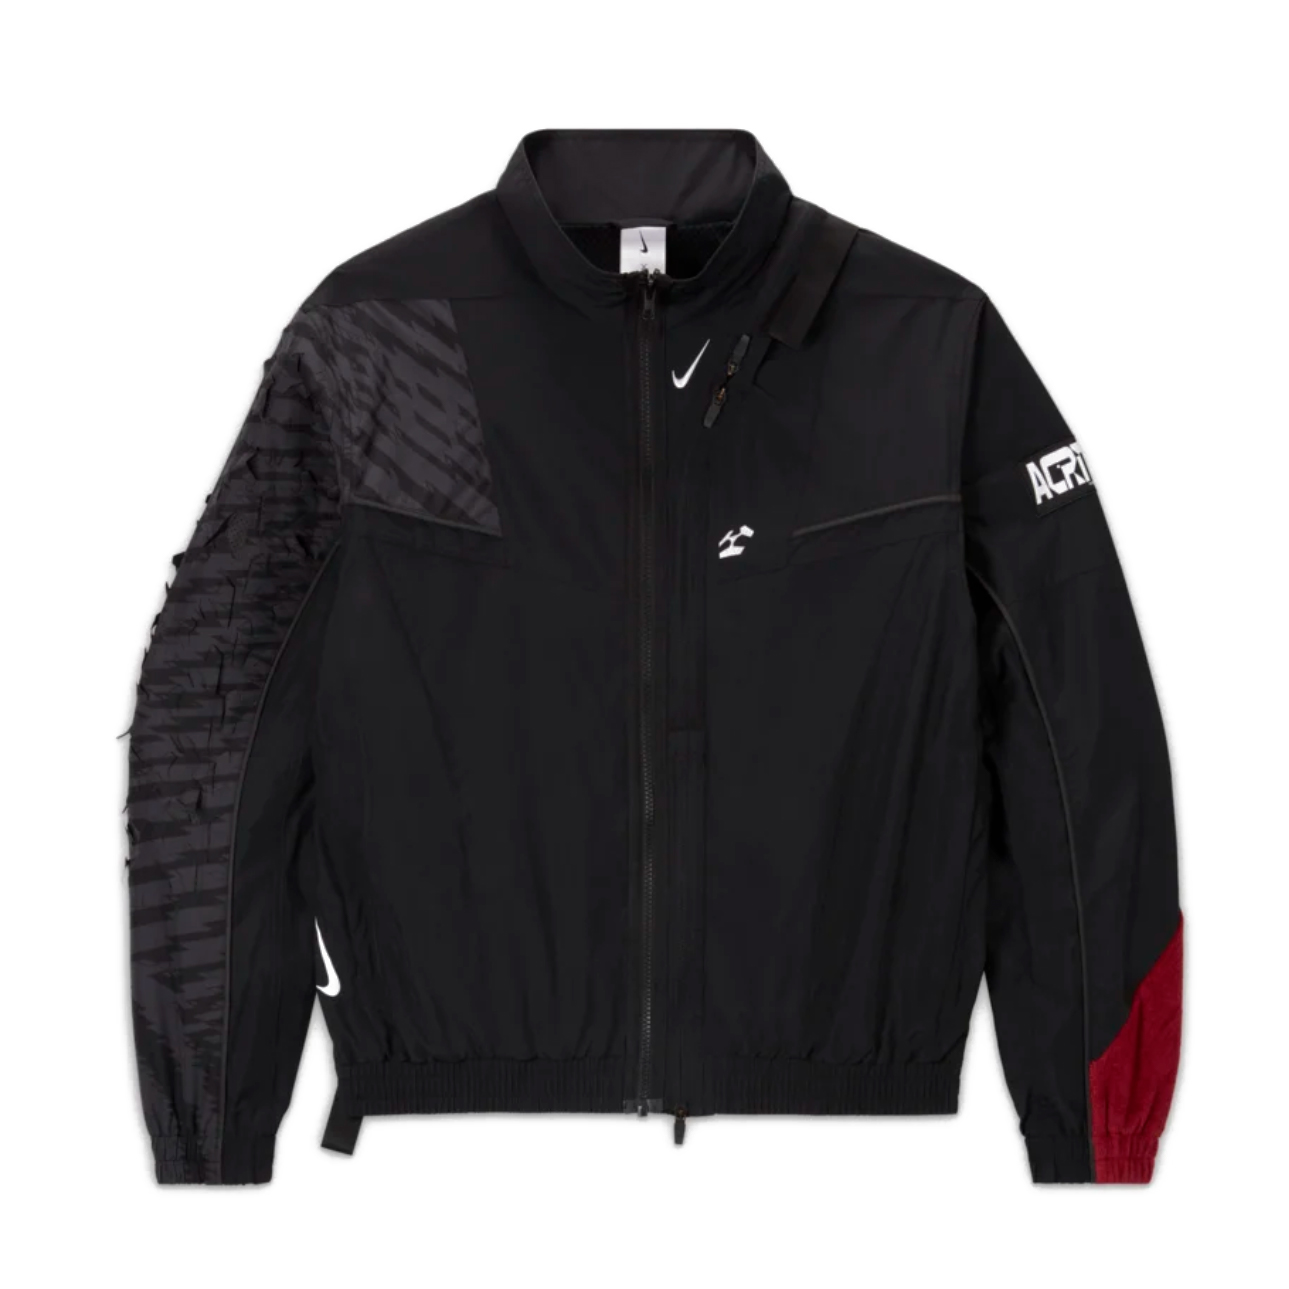 NikeLab x Acronym Woven Jacket (Asia Sizing) Black